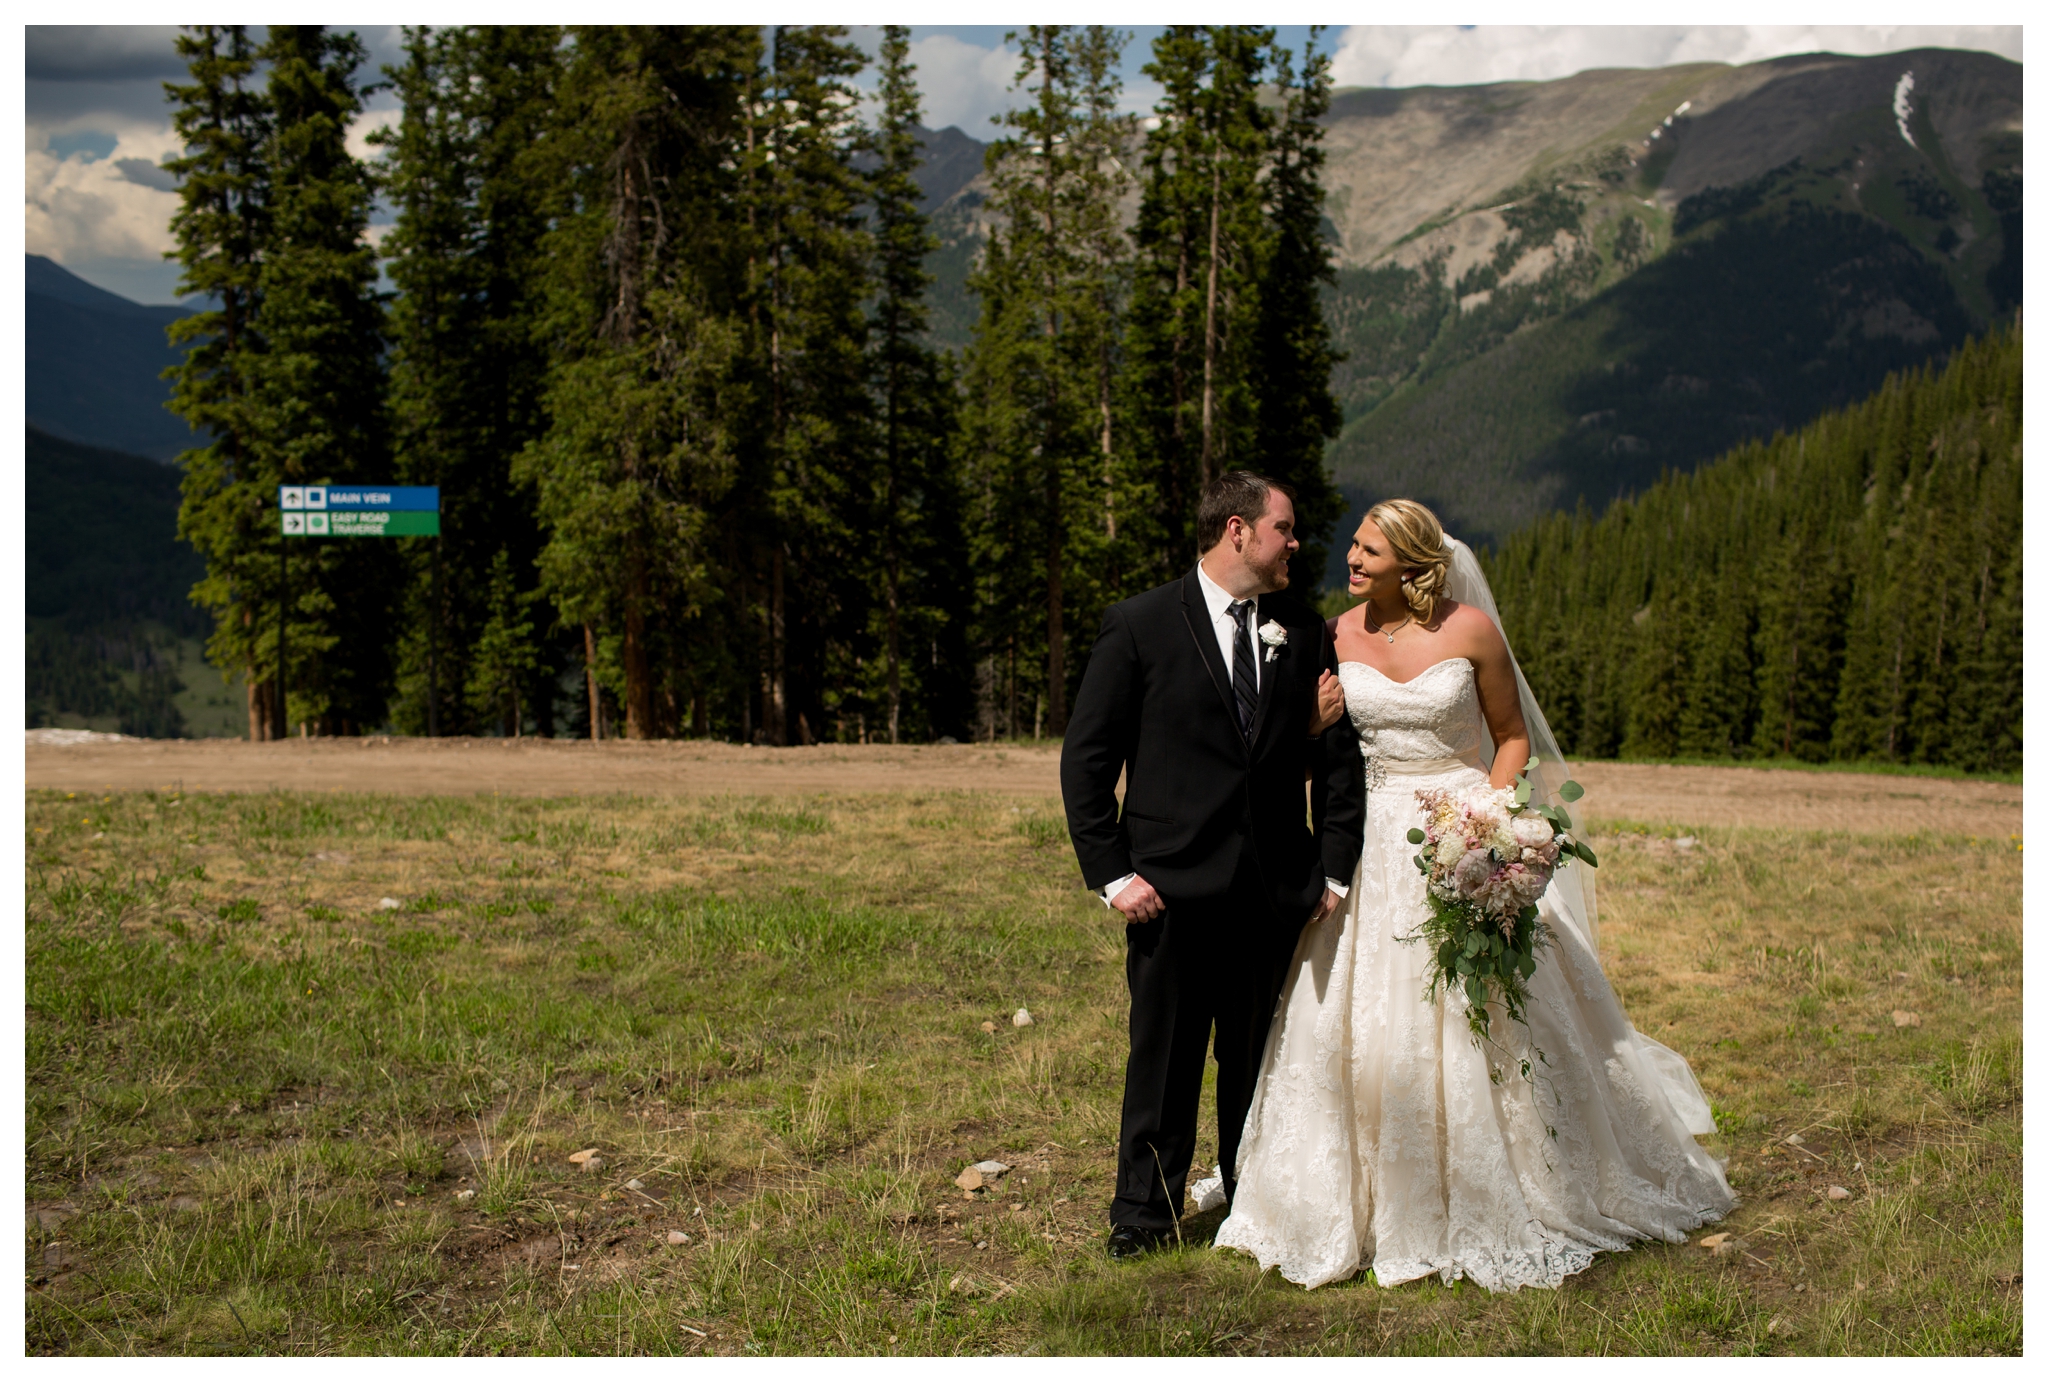 Colorado mountain wedding photos by Plum Pretty Photography 